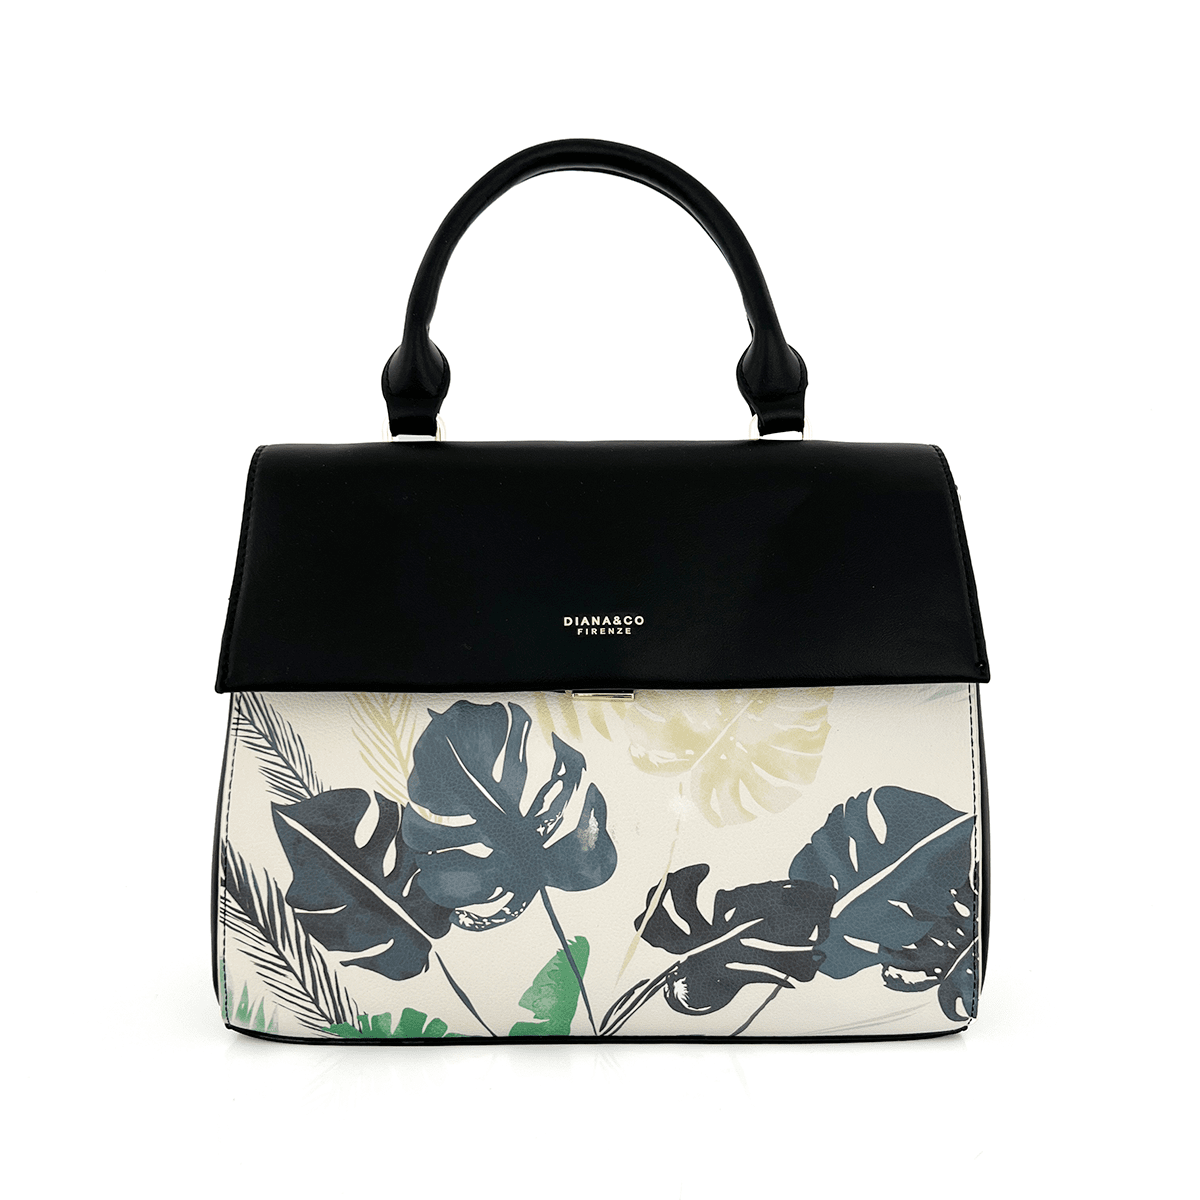 Diana & Co - Дамска чанта с флорален принт - черна